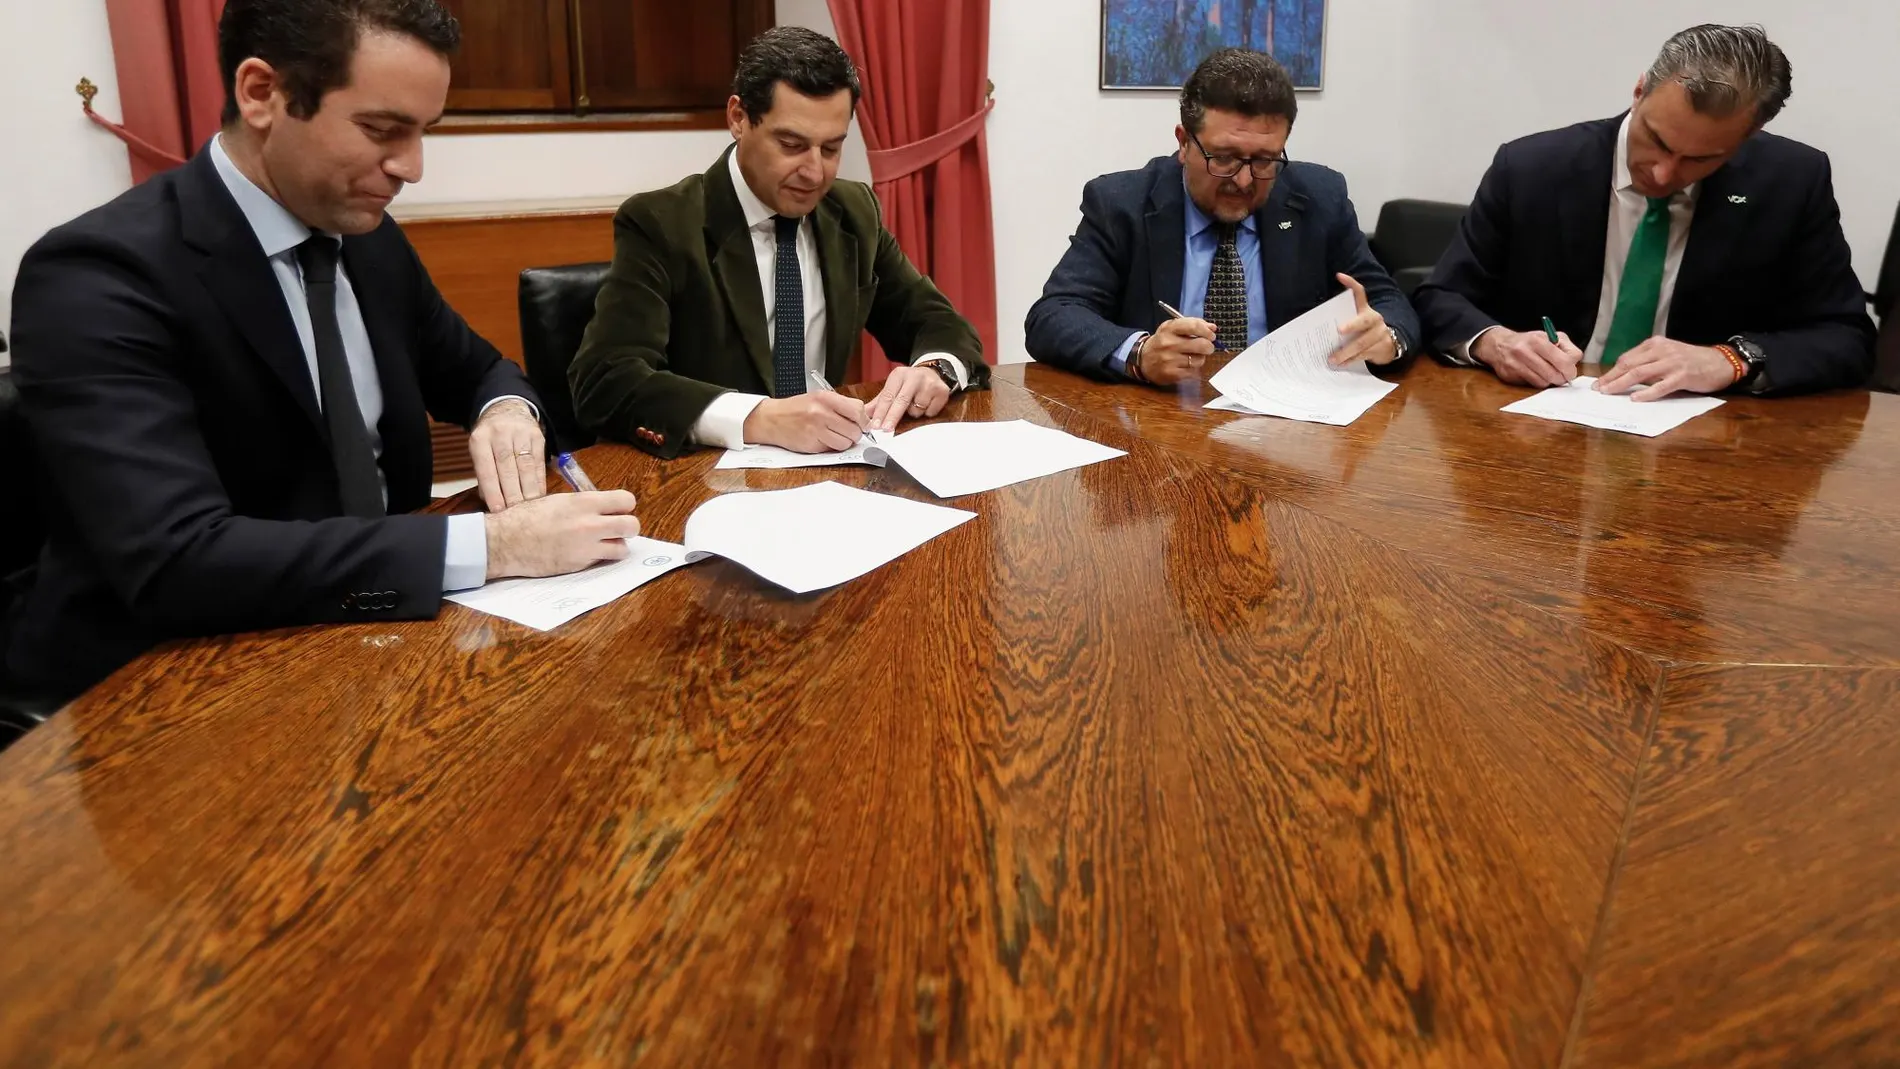 Teodoro García Egea y Javier Ortega Smith firman junto a Juanma Moreno y Francisco Serrano, el acuerdo. EFE/Jose Manuel Vidal.